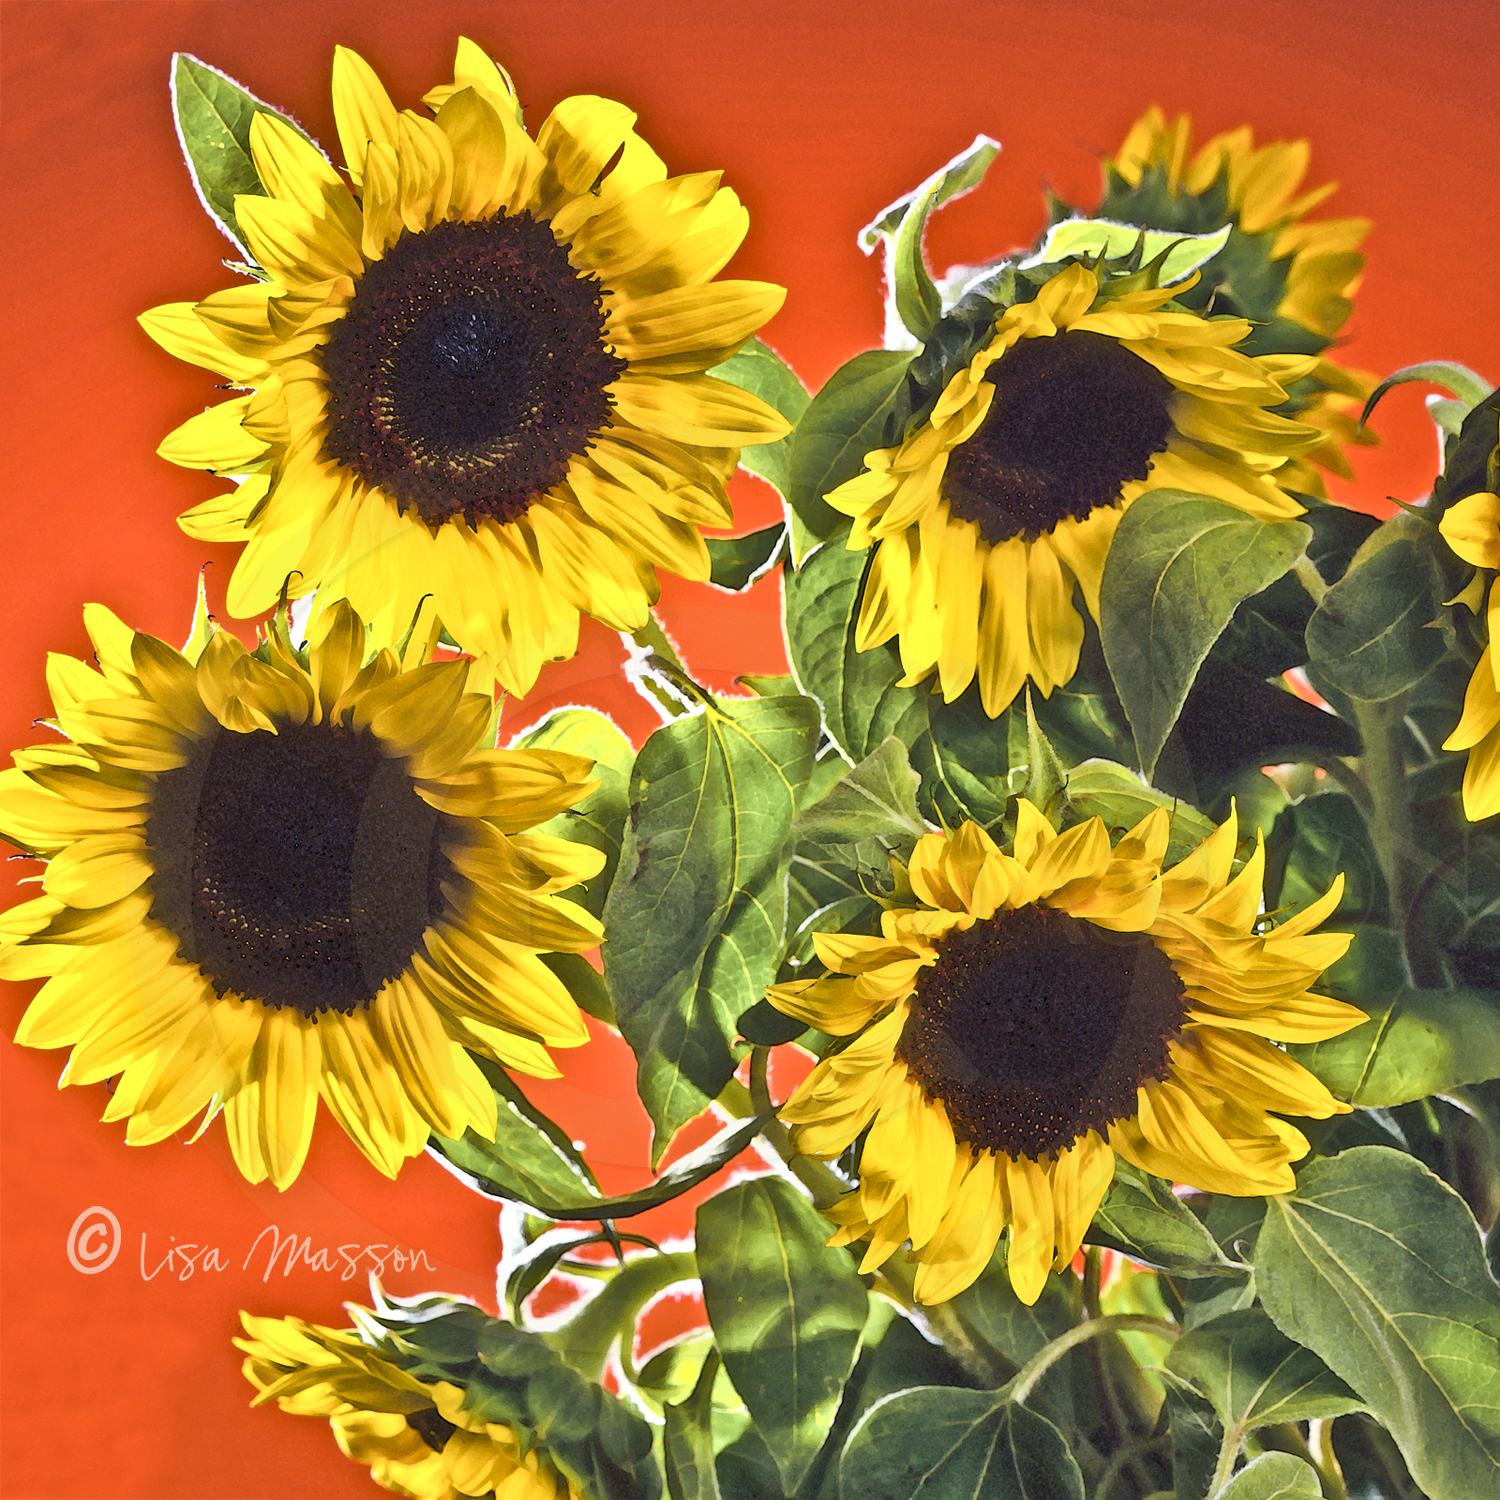 Sunflowers 8 ©